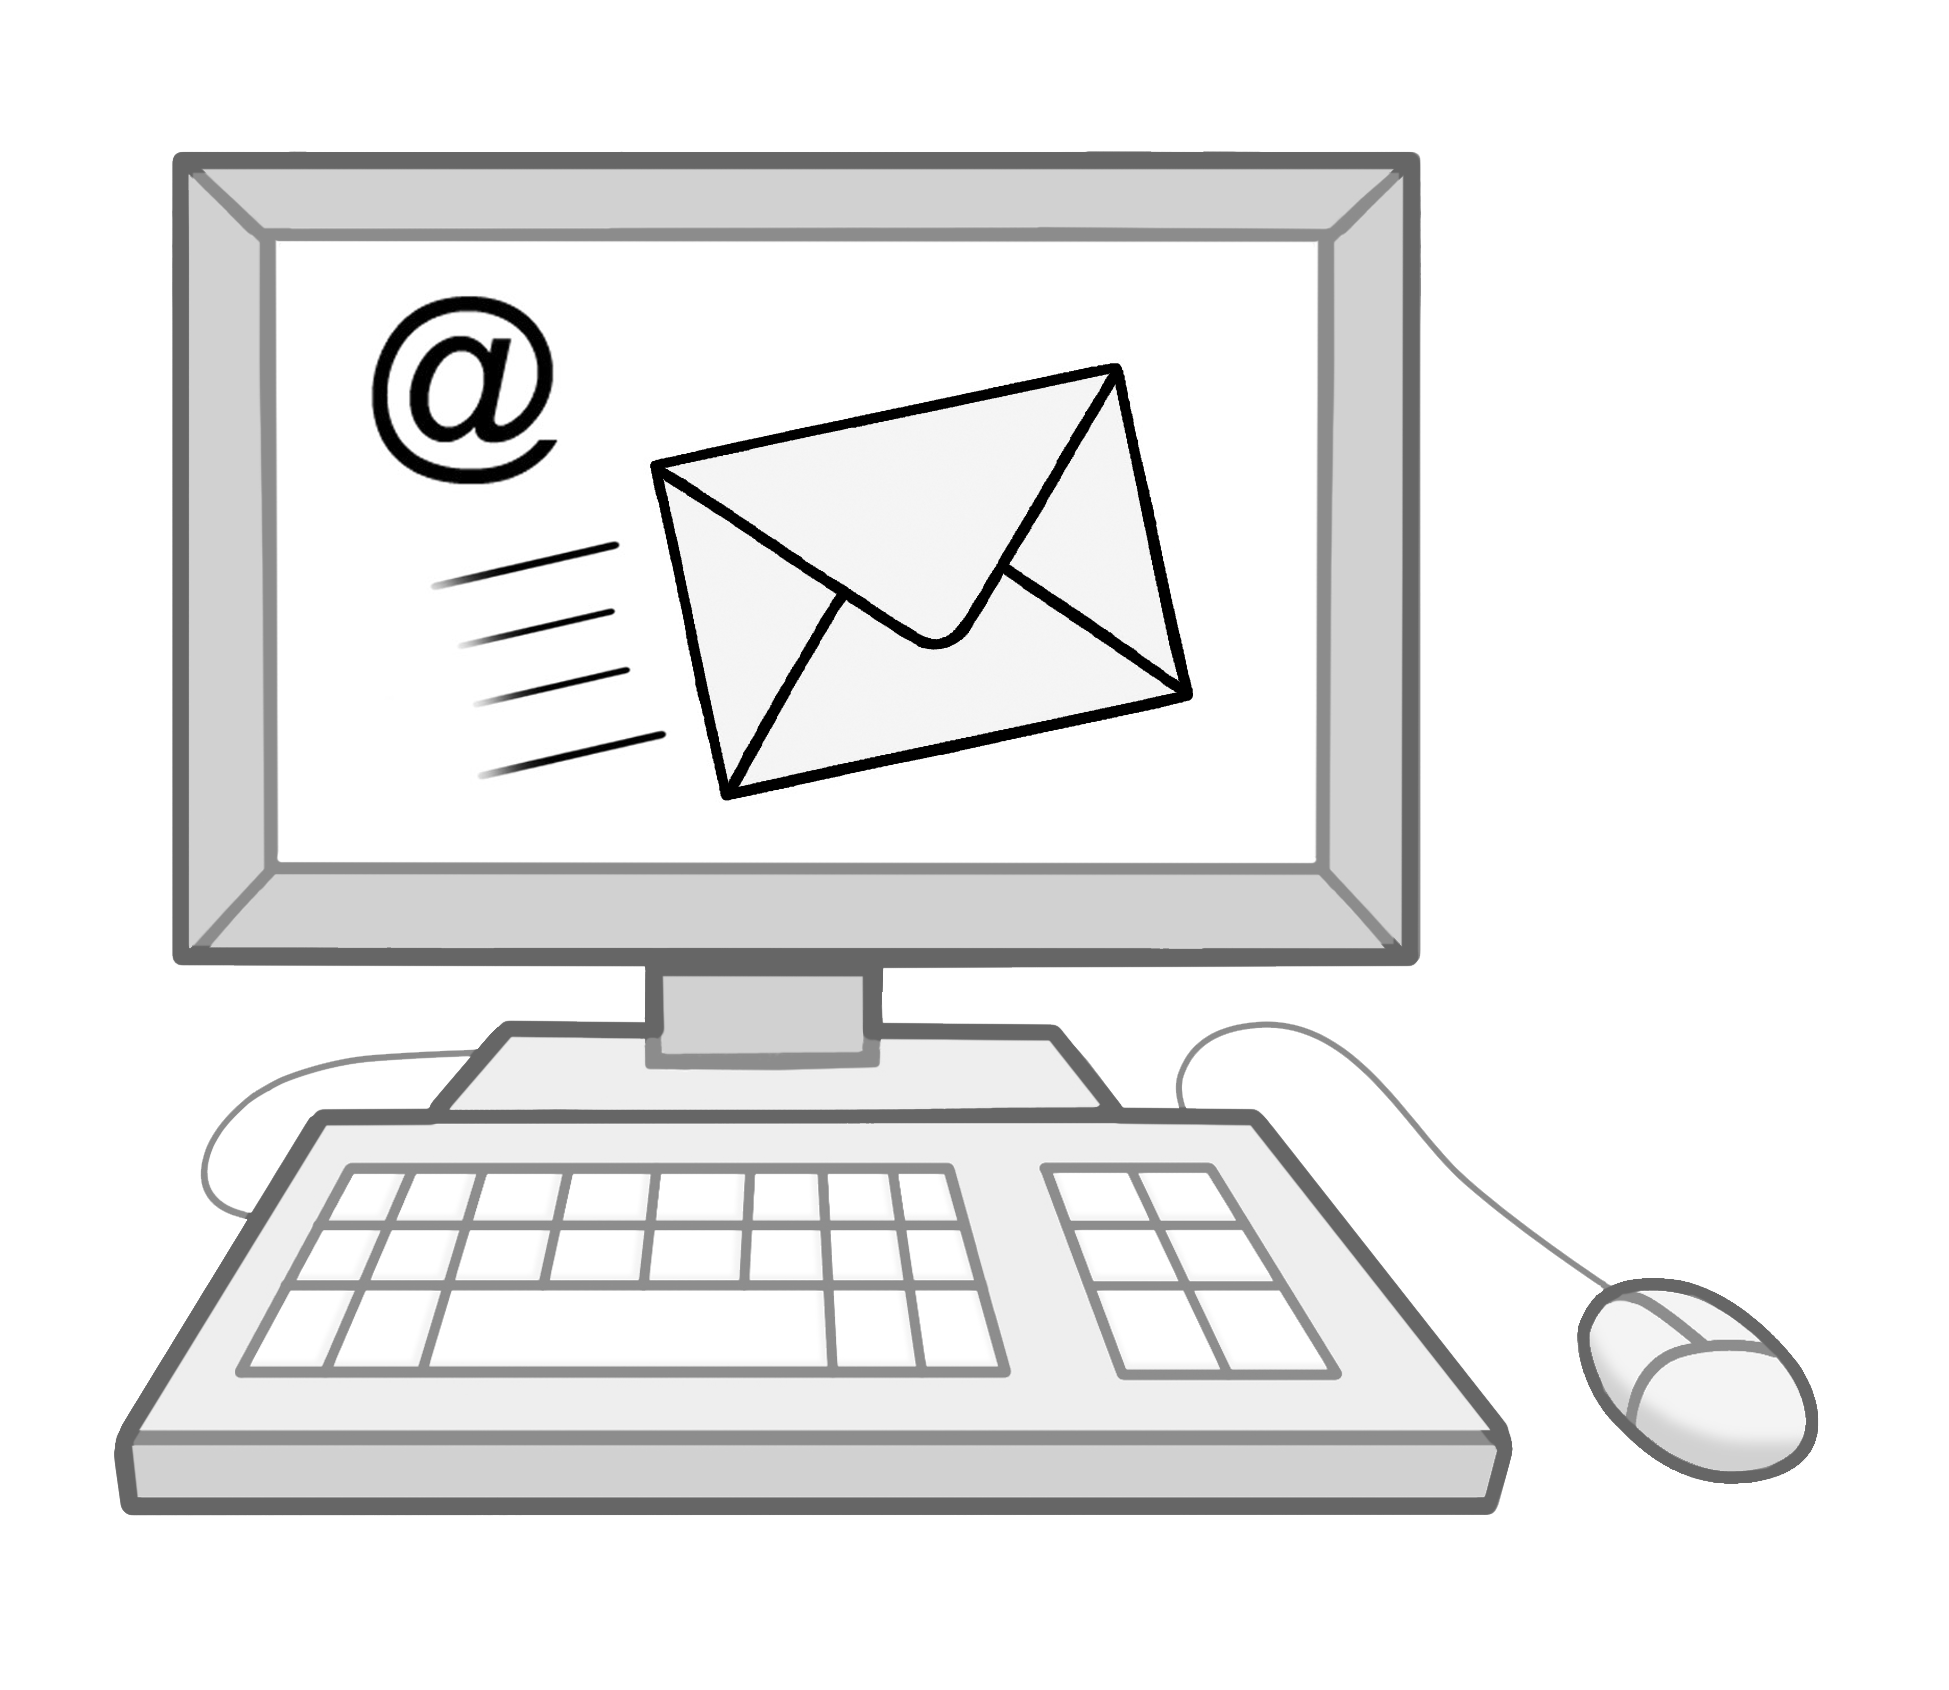 Leichte Sprache Bild: Ein Computer, auf dem Bildschirm ein Briefumschlag und ein @ Zeichen